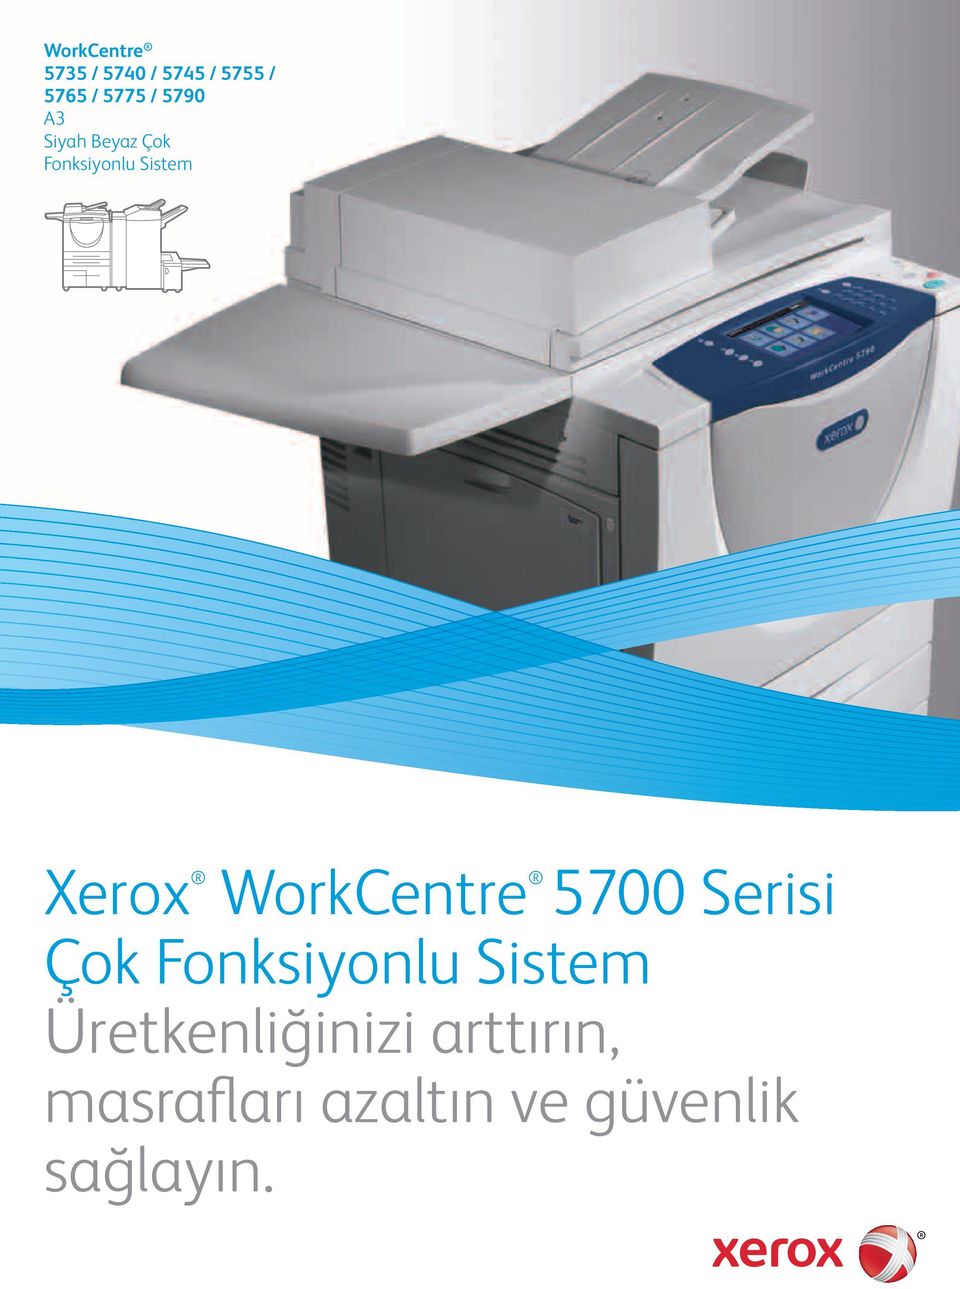 WorkCentre 5700 Serisi Çok Fonksiyonlu Sistem